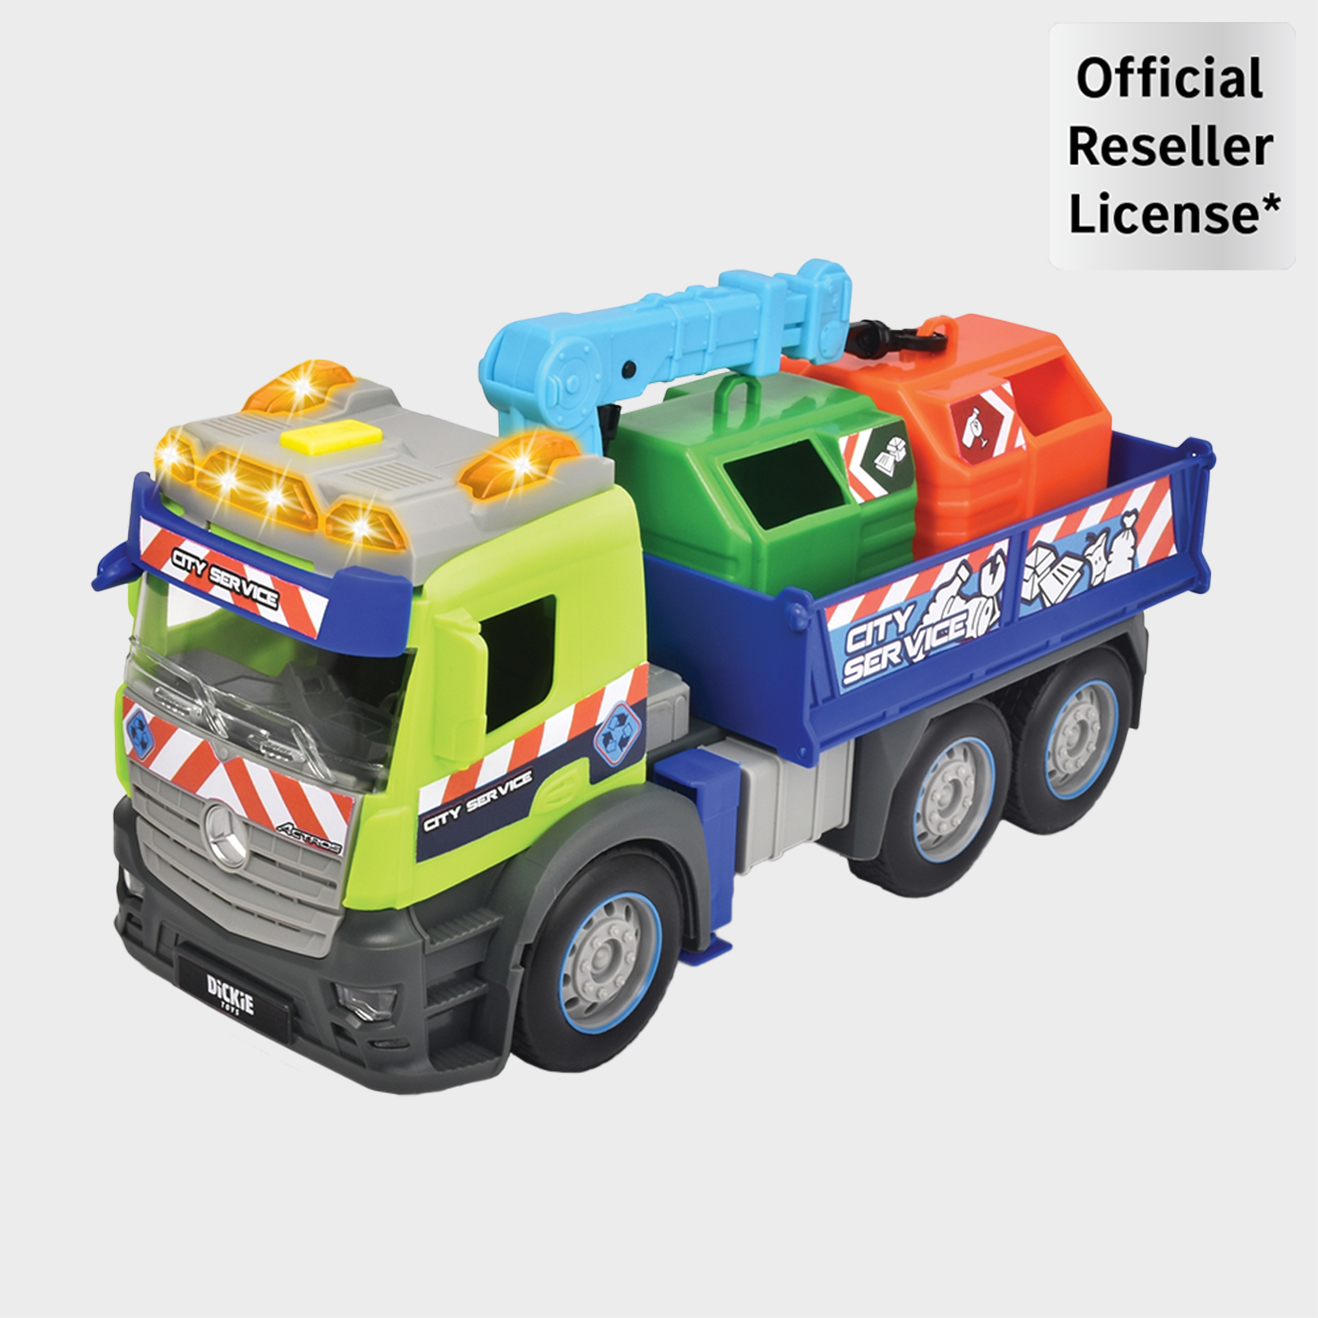 Spielzeug-Recycling-Müllwagen